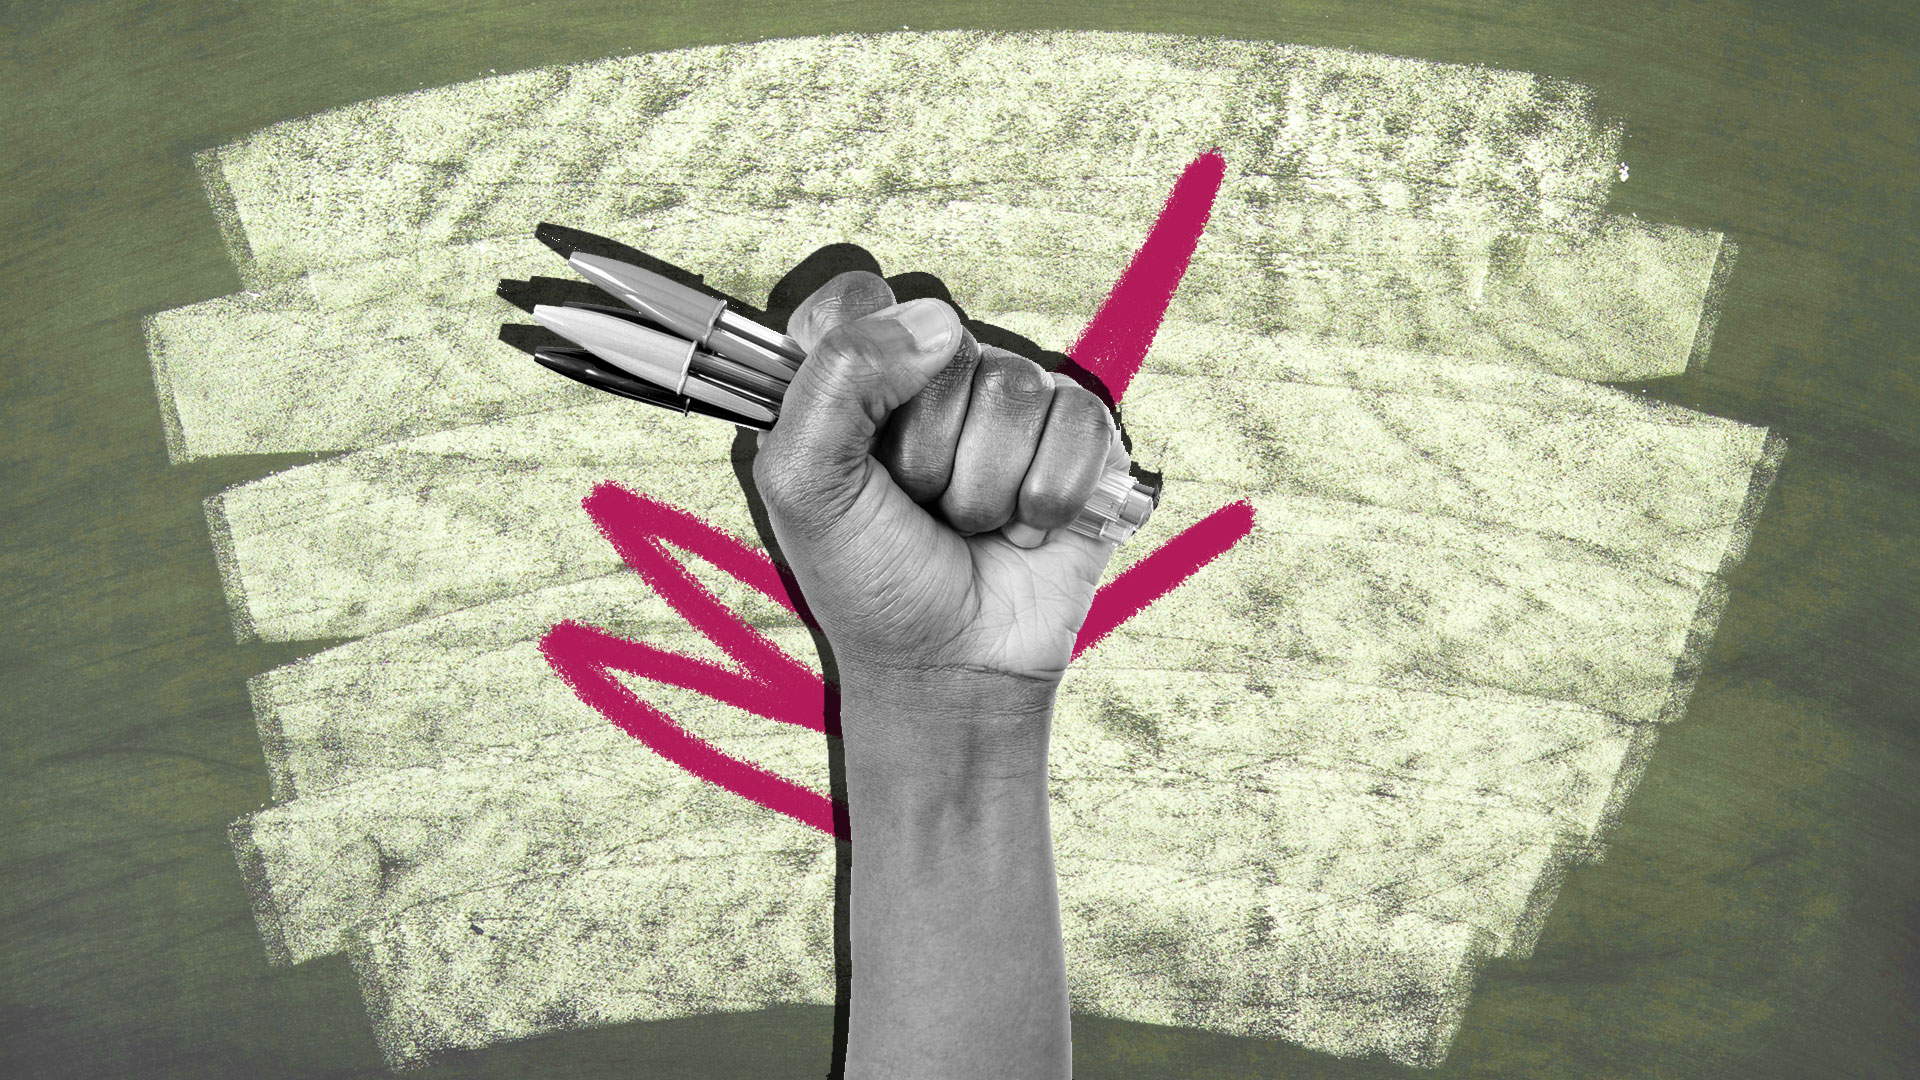 Ilustração de um punho com a mão fechada em preto e branco, segurando três canetas